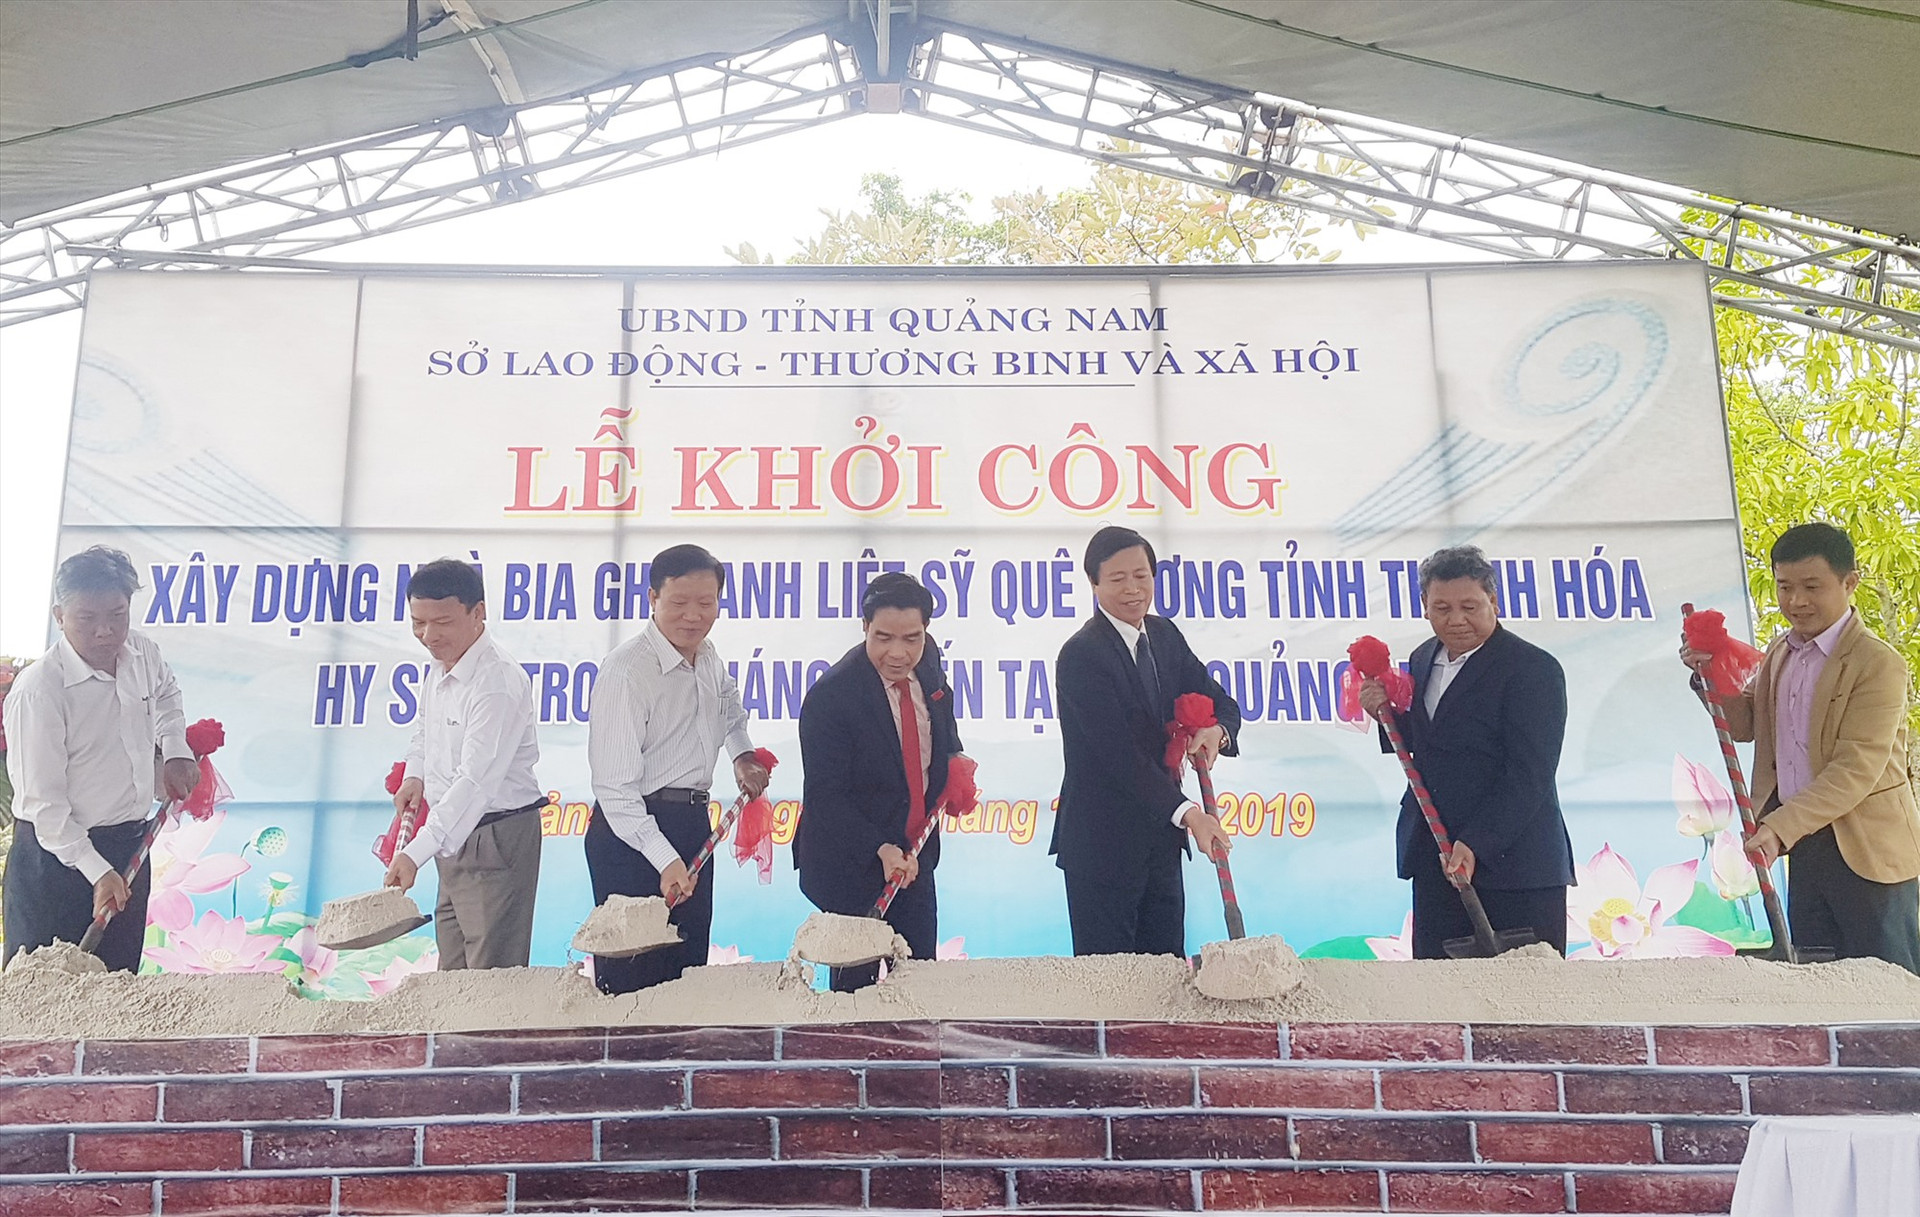 Nhà bia ghi danh liệt sĩ quê hương Thanh Hóa hy sinh trong kháng chiến tại Quảng Nam được khởi công xây dựng vào cuối năm 2019. Ảnh: DIỄM LỆ